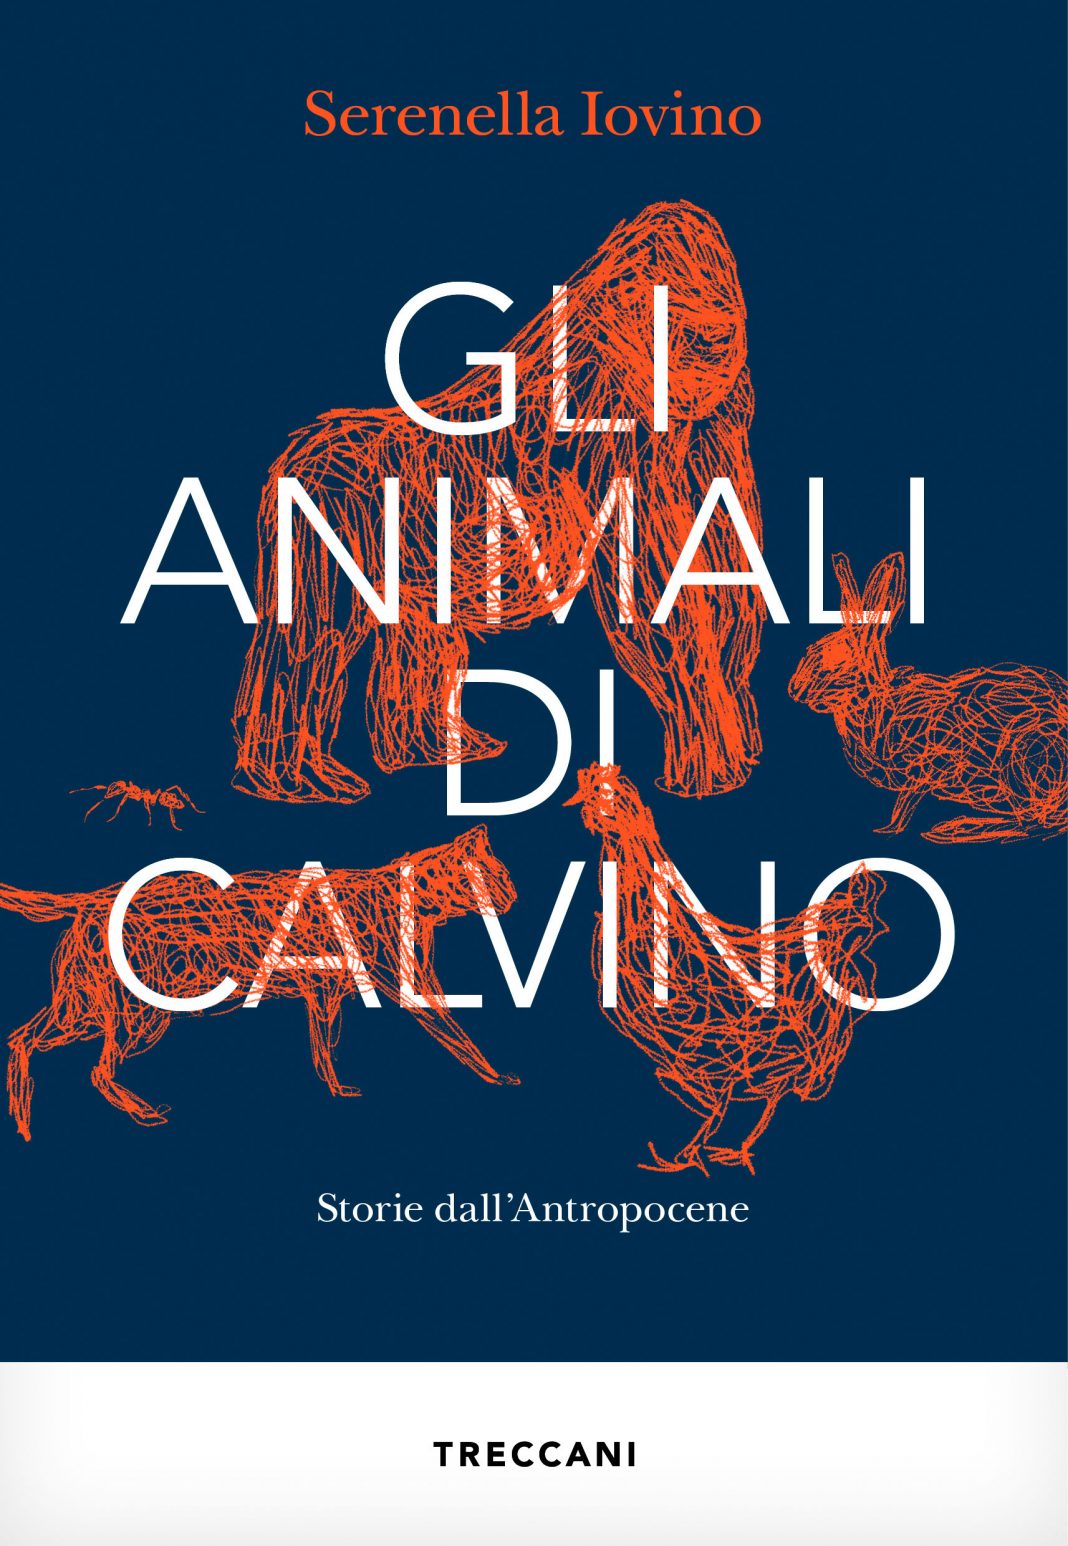 Serenella Iovino – Gli animali di Calvino – Storie dall’antropocenehttps://www.exibart.com/repository/media/formidable/11/img/58e/Iovino_cover-1068x1546.jpeg